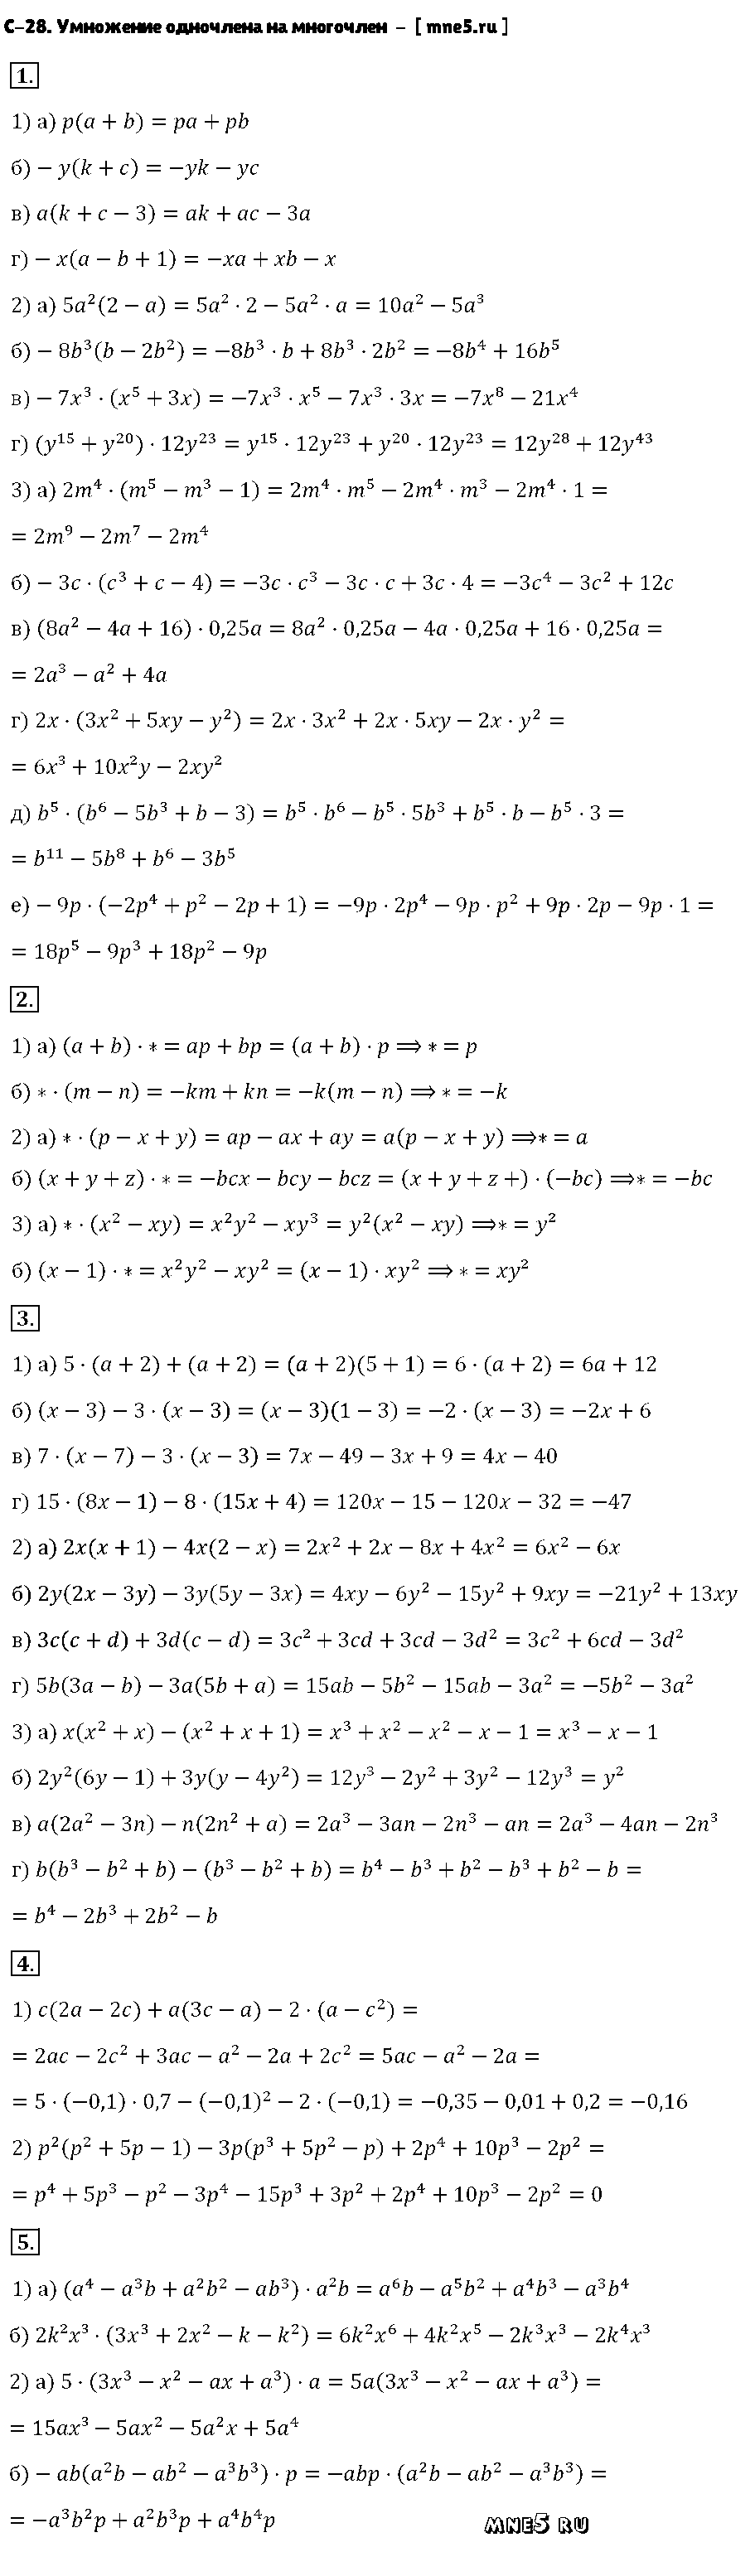 ГДЗ Алгебра 7 класс - С-28. Умножение одночлена на многочлен